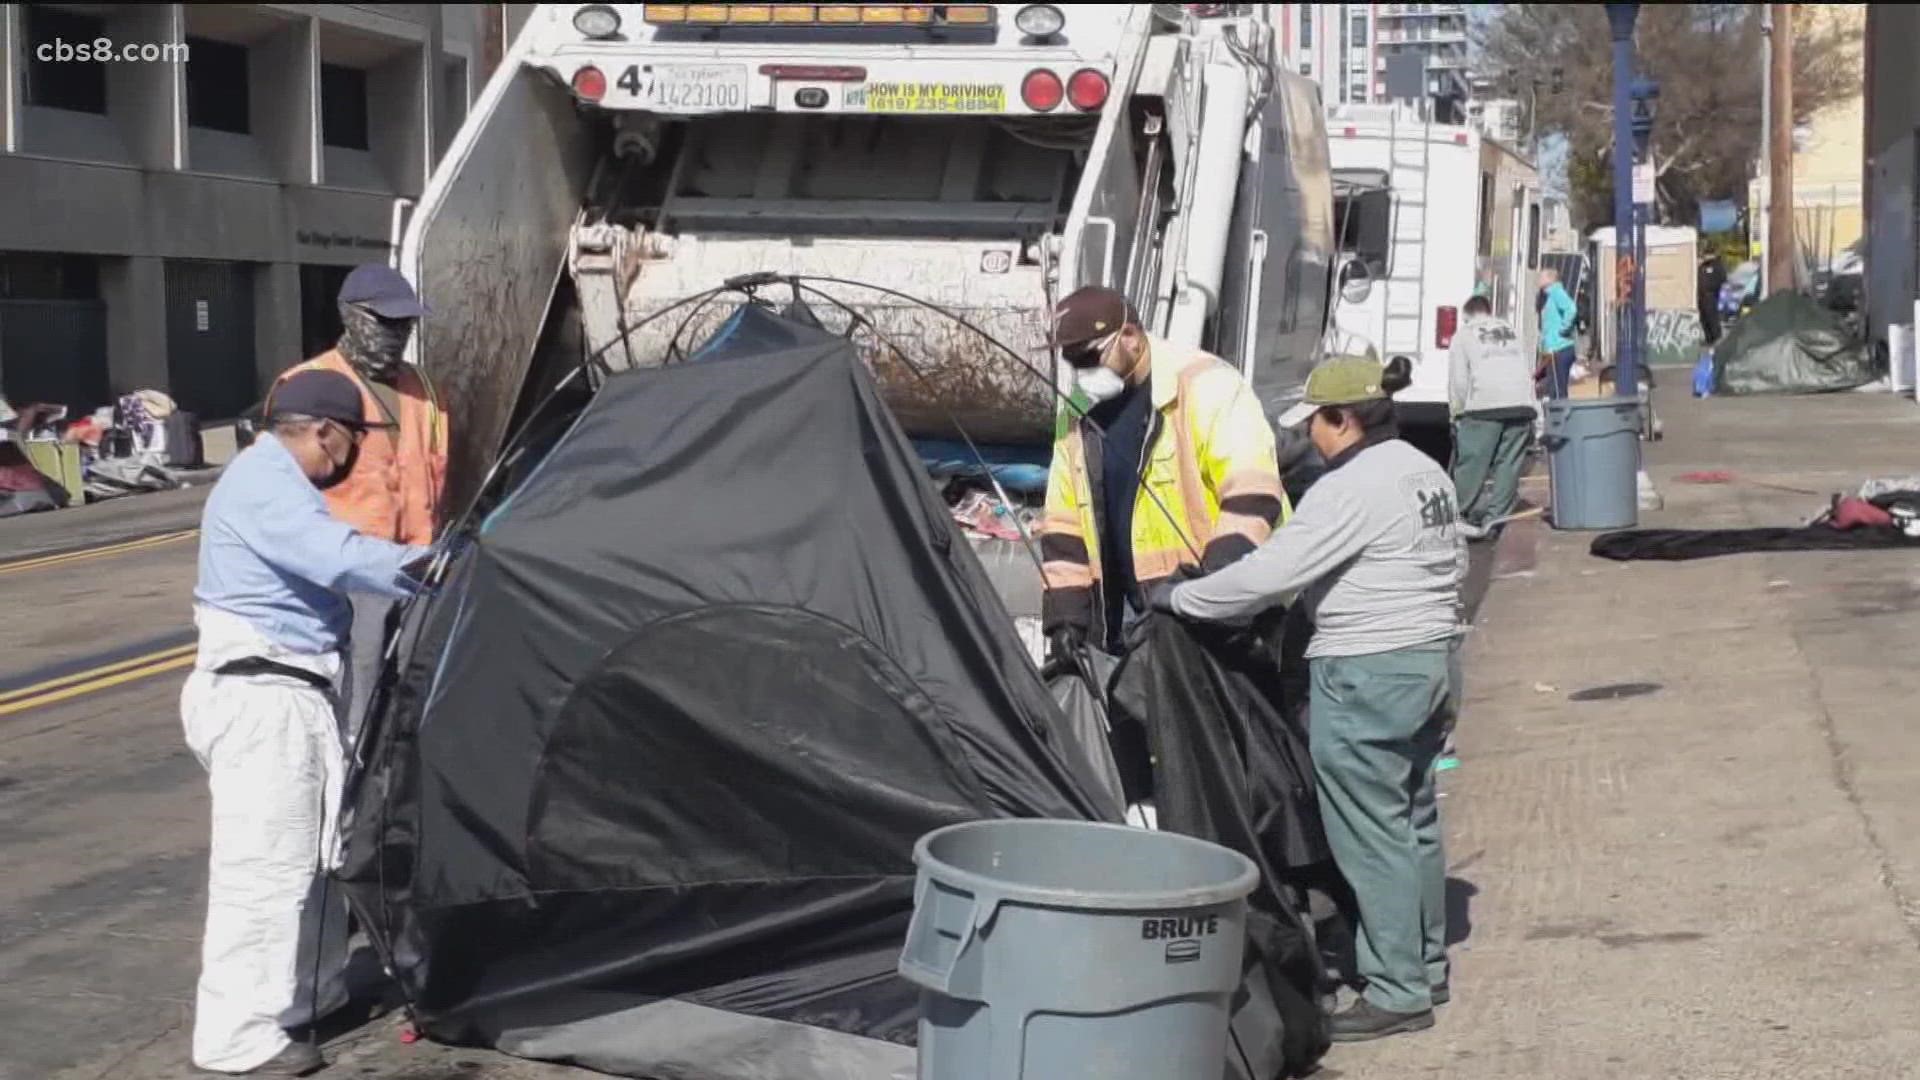 Outcry over how city cleanup homeless encampment 